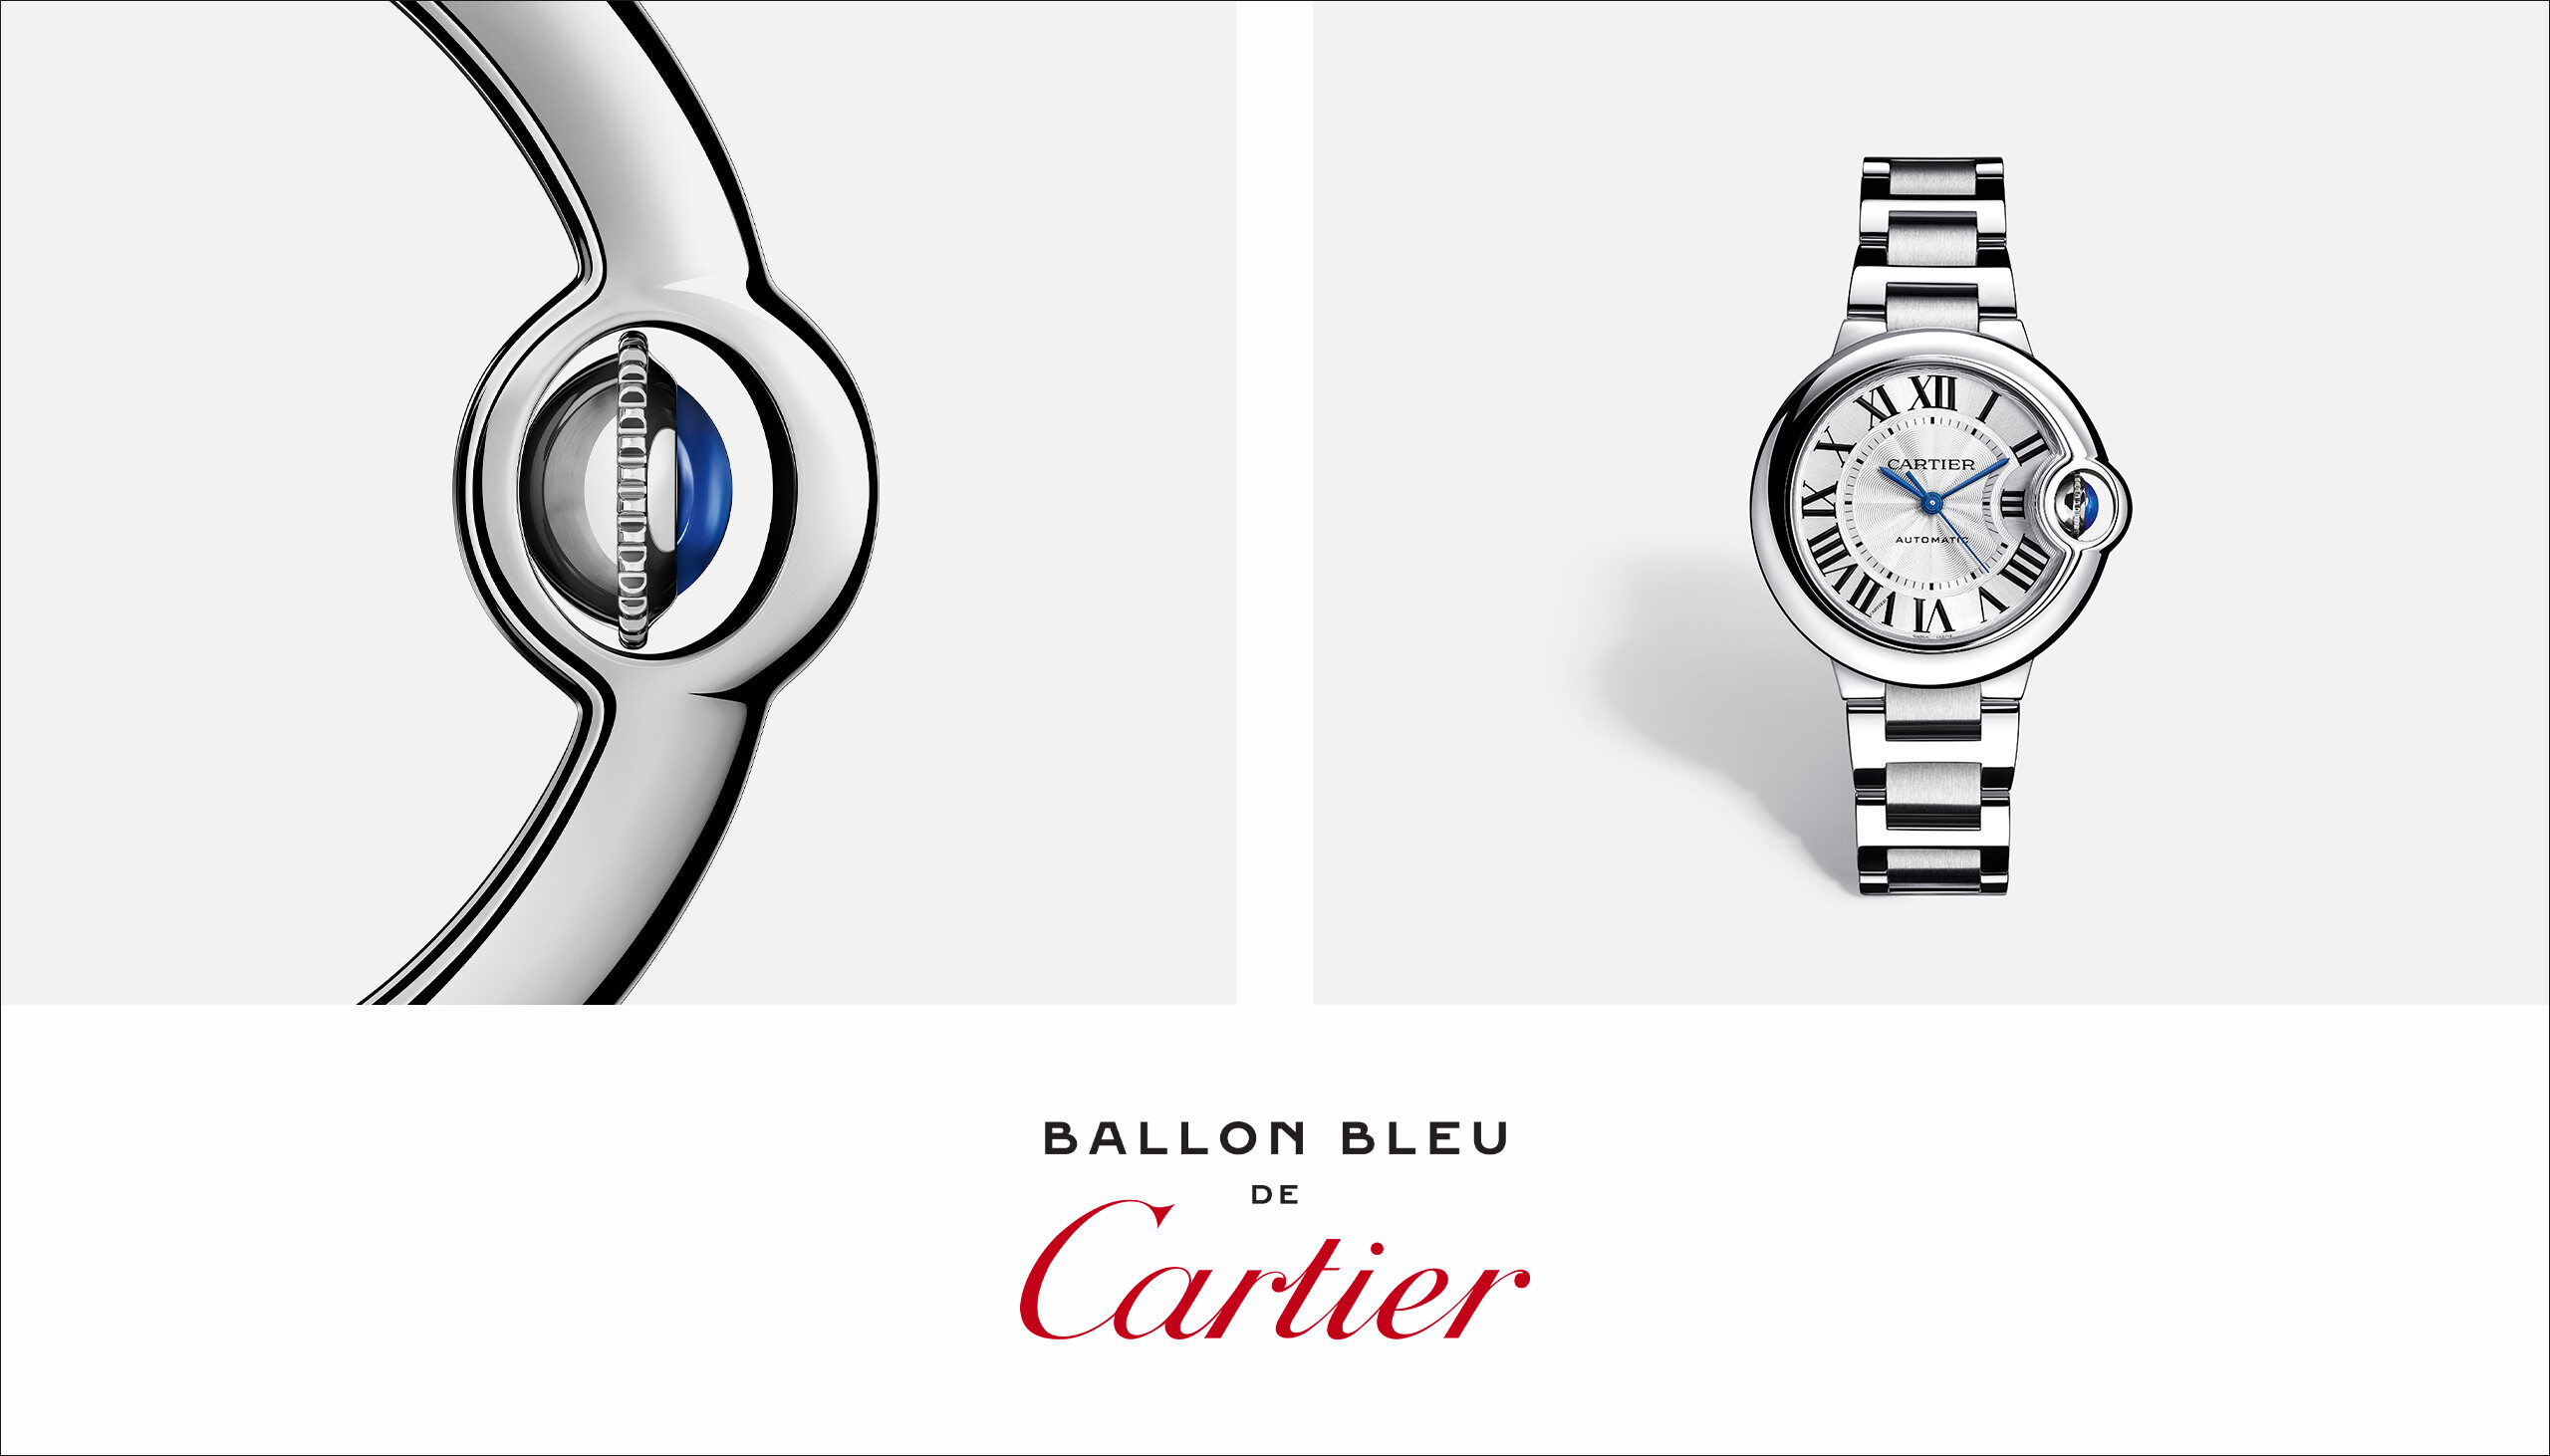 Montre Ballon Bleu de Cartier Bracelet Cuir bleu